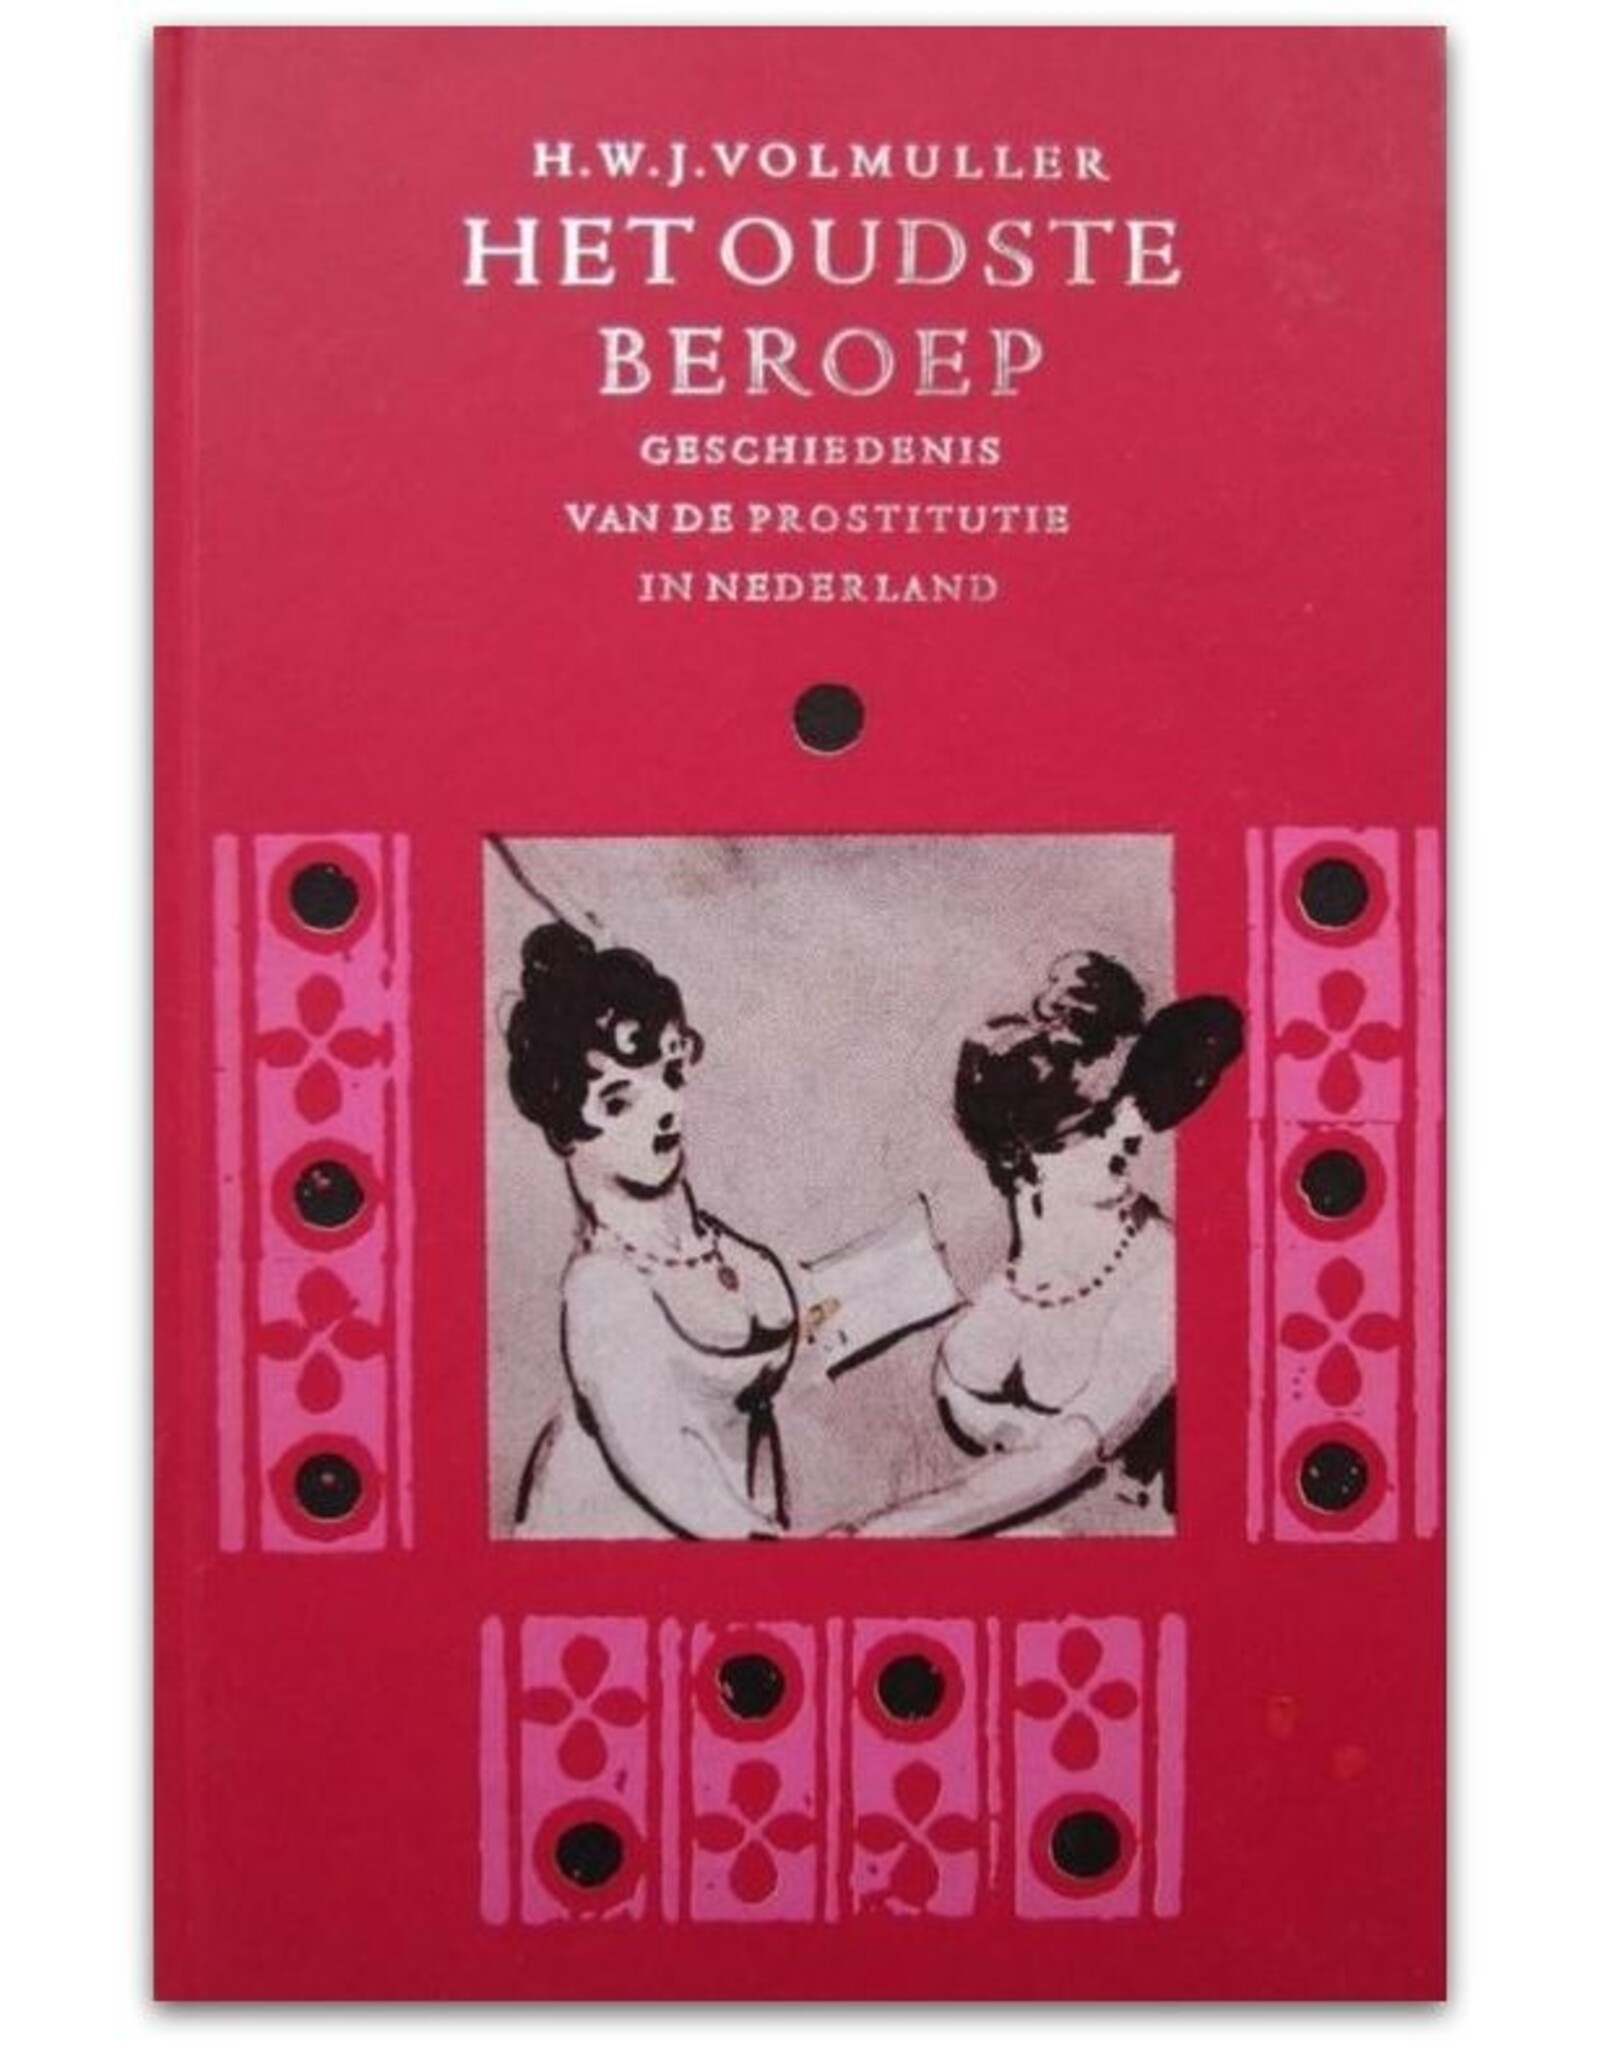 H.W.J. Volmuller - Het oudste beroep. Geschiedenis van de prostitutie in Nederland. Met eenenveertig afbeeldingen